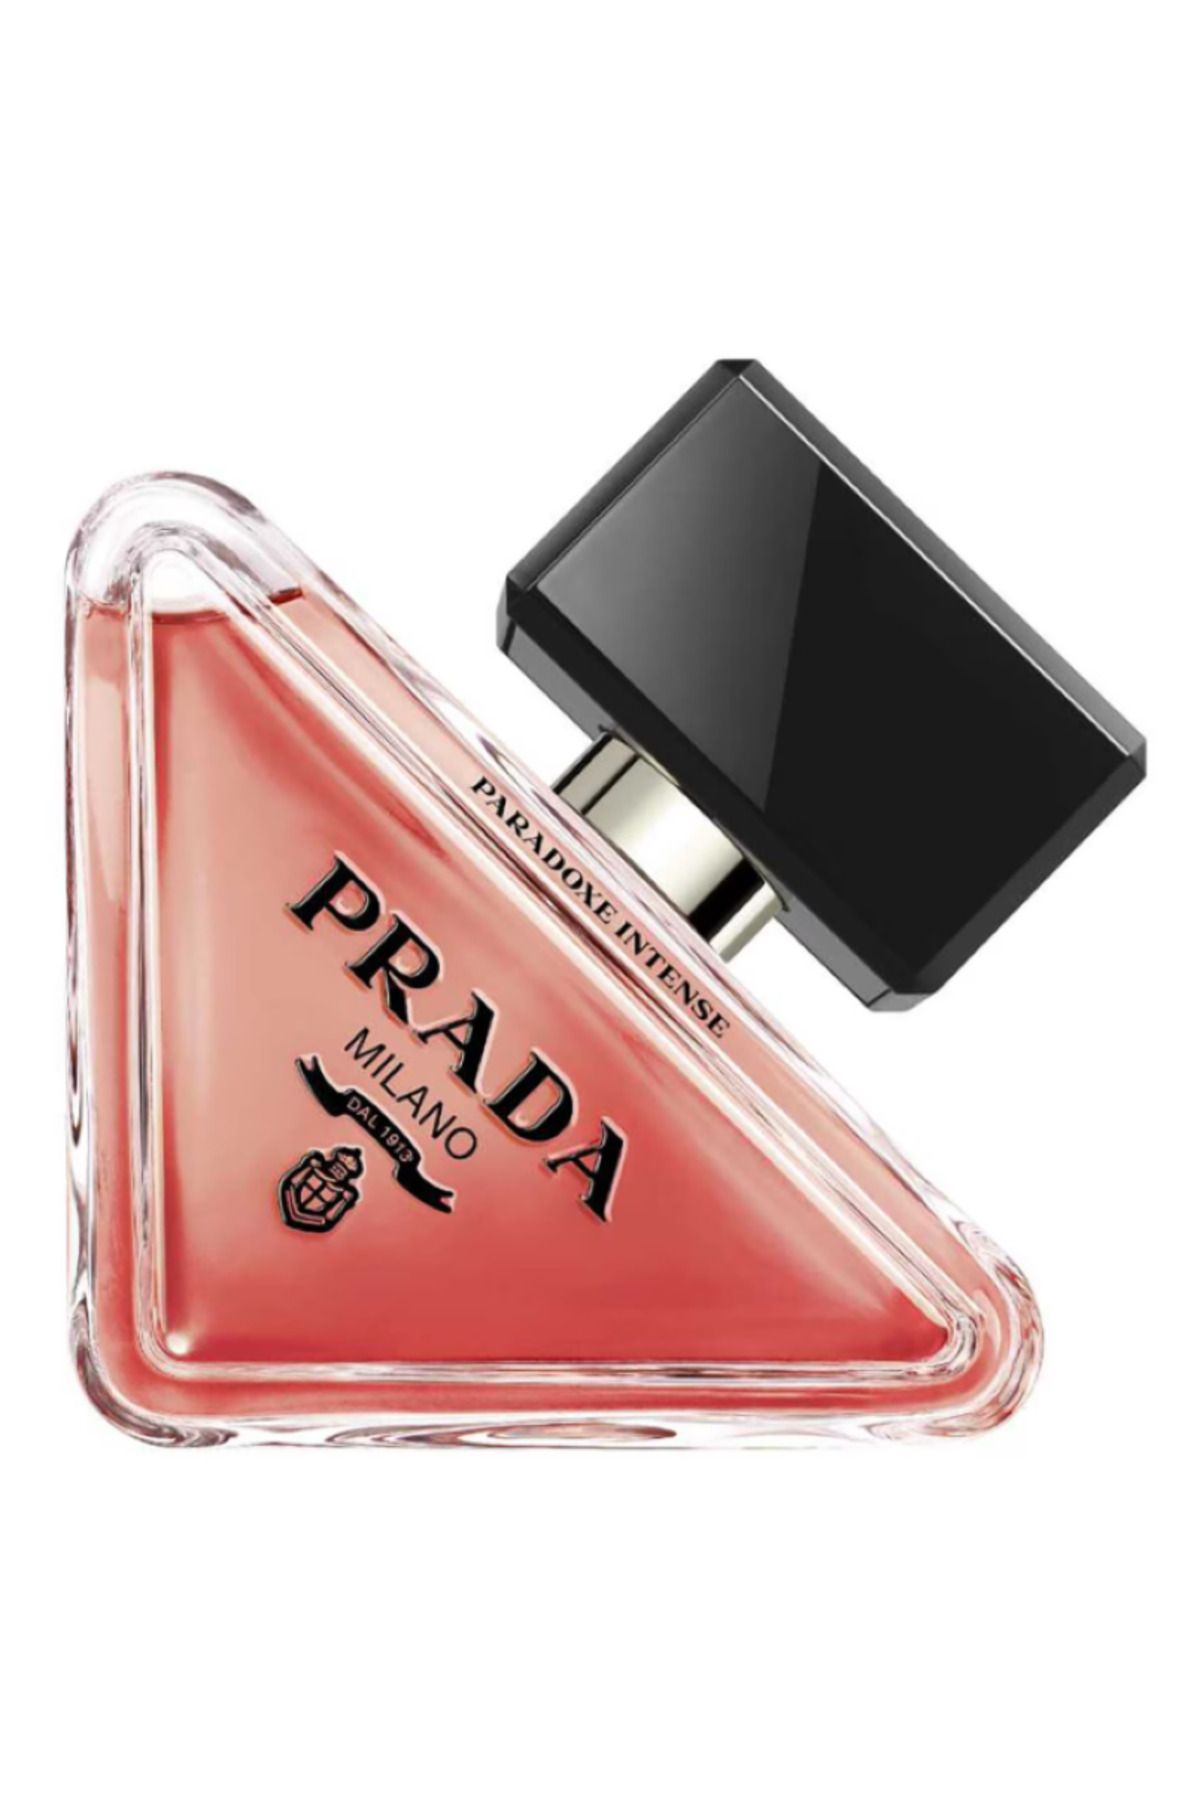 Prada Paradoxe Intense - Eau de Parfum Hem Güçlü Hem De Hassas 50 ml